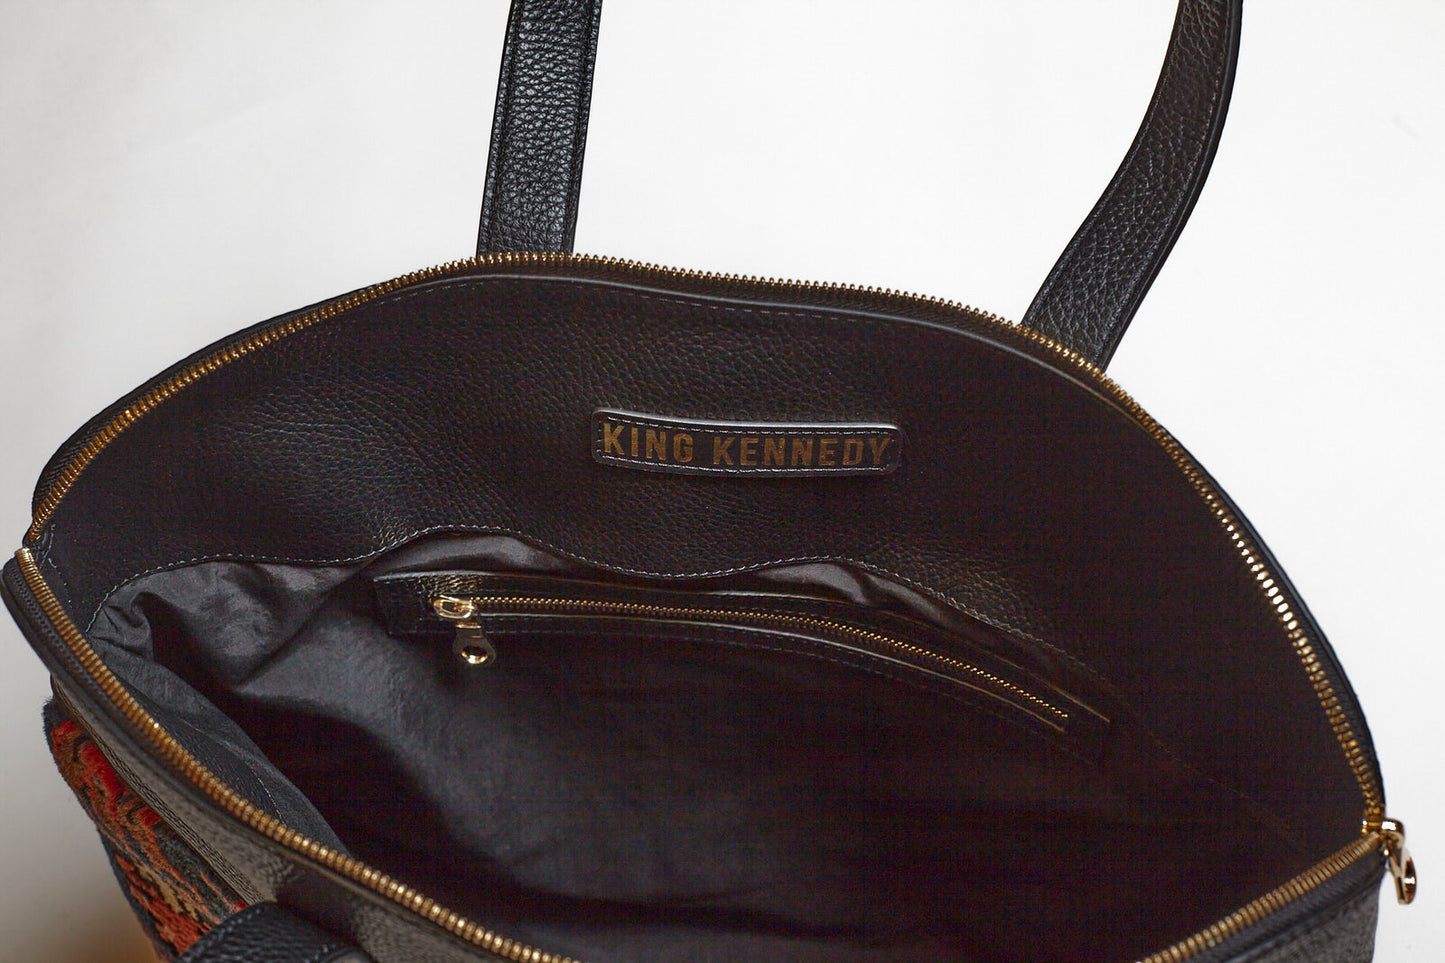 King Kennedy Despina Bag - 00015